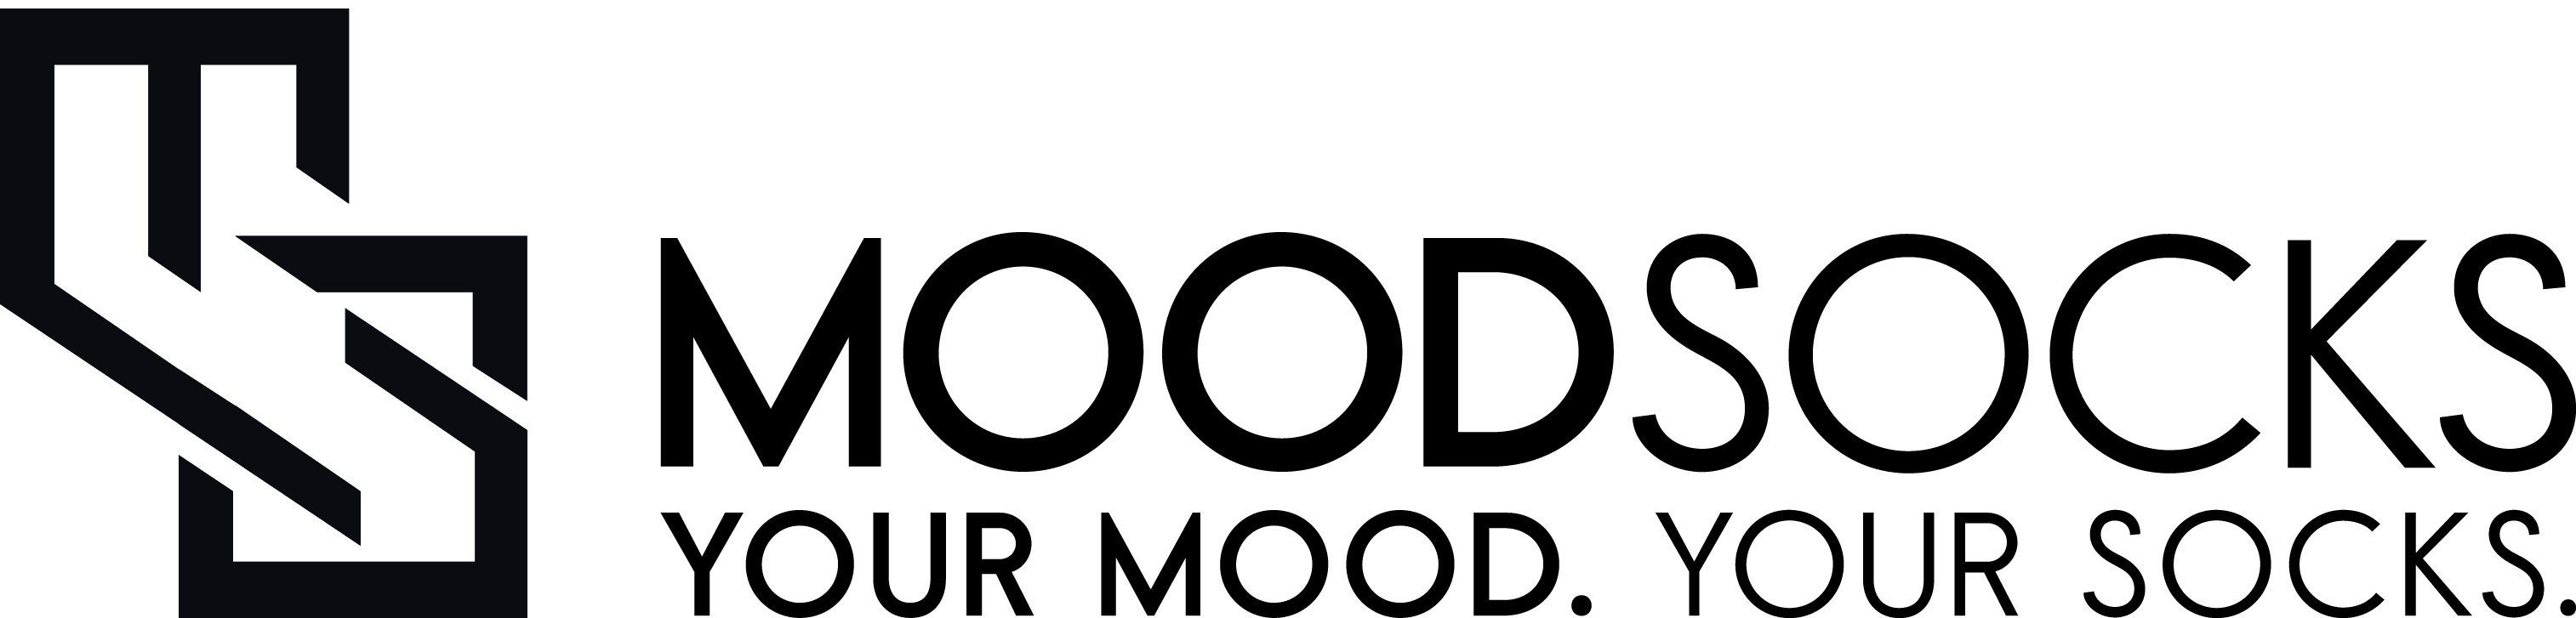 moodsocks